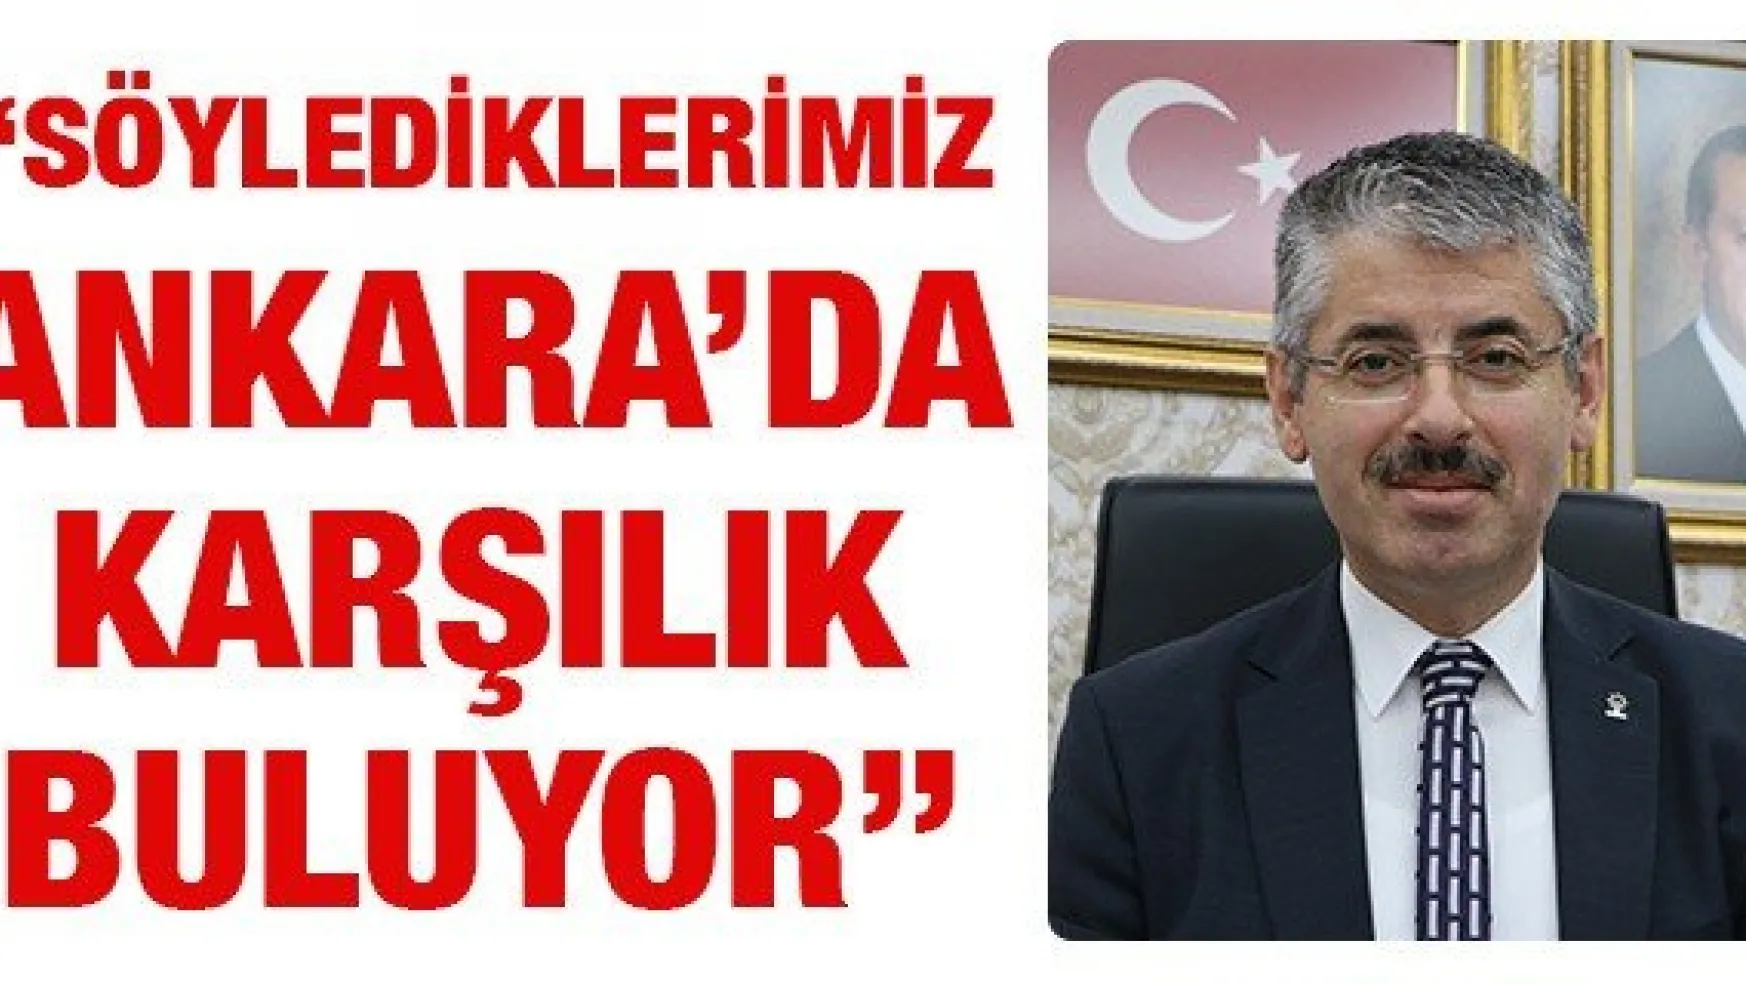 'Söylediklerimiz Ankara'da karşılık buluyor'